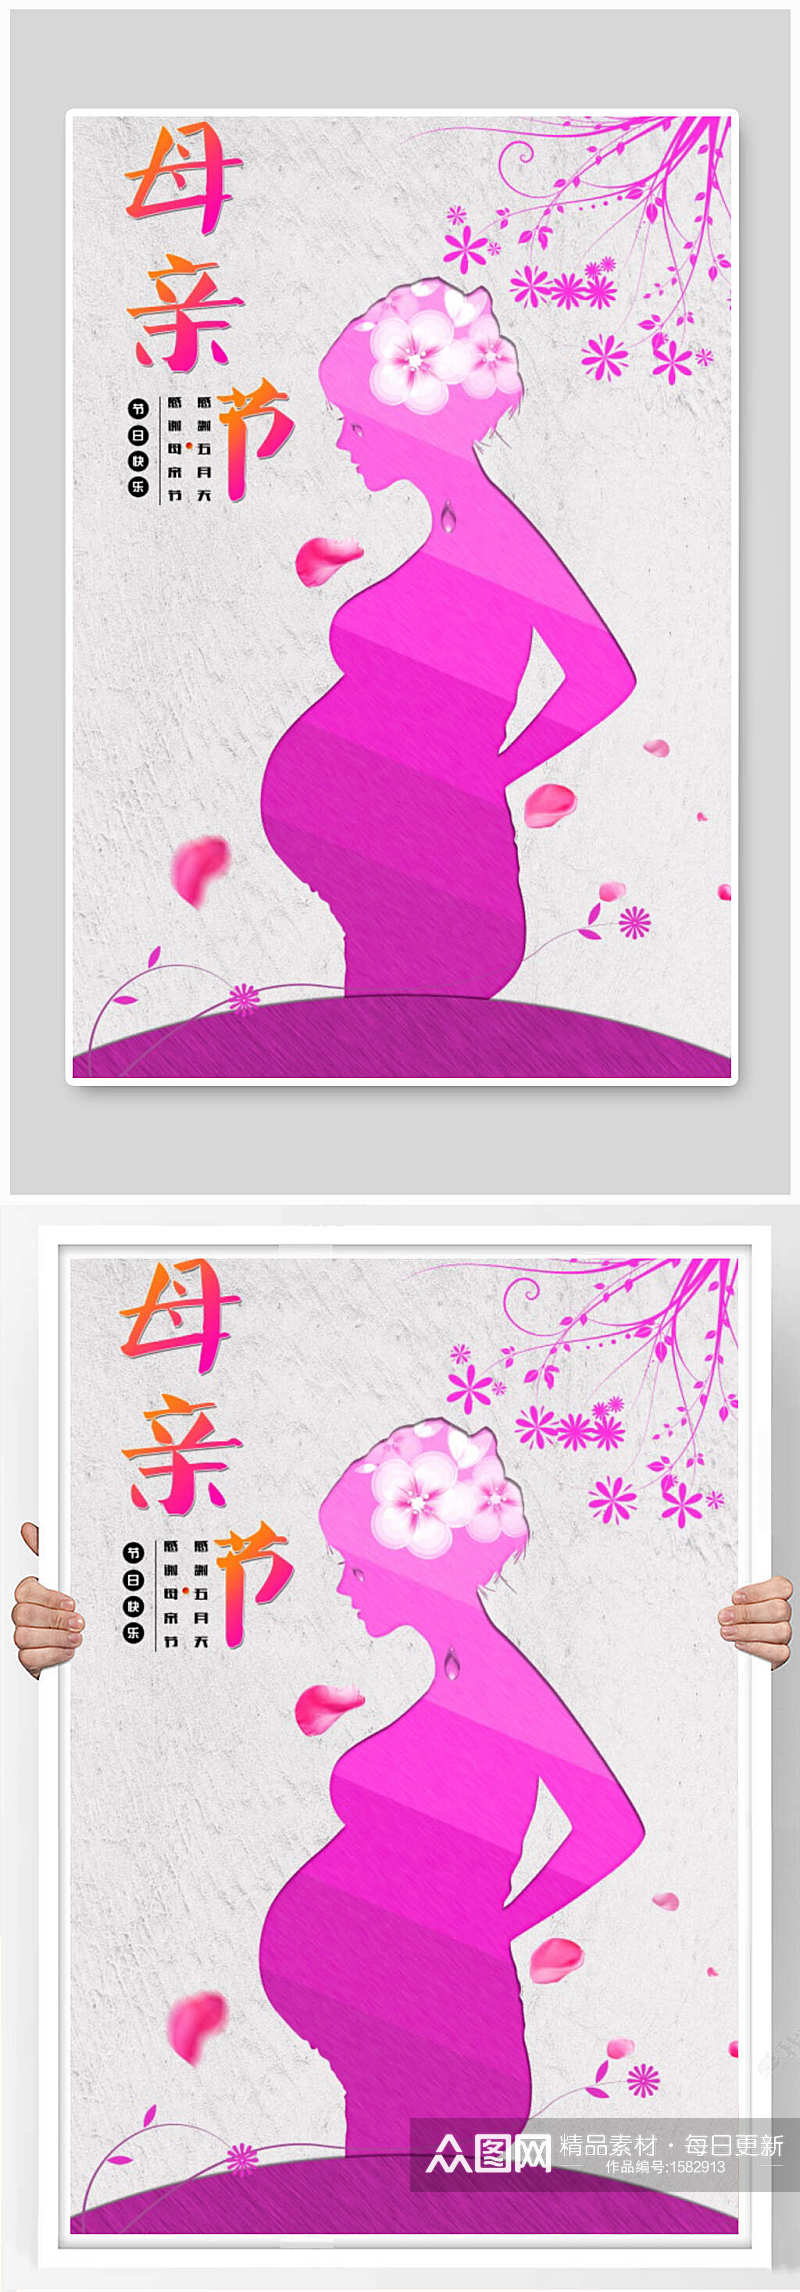 紫色炫酷时尚母亲节展示海报设计素材